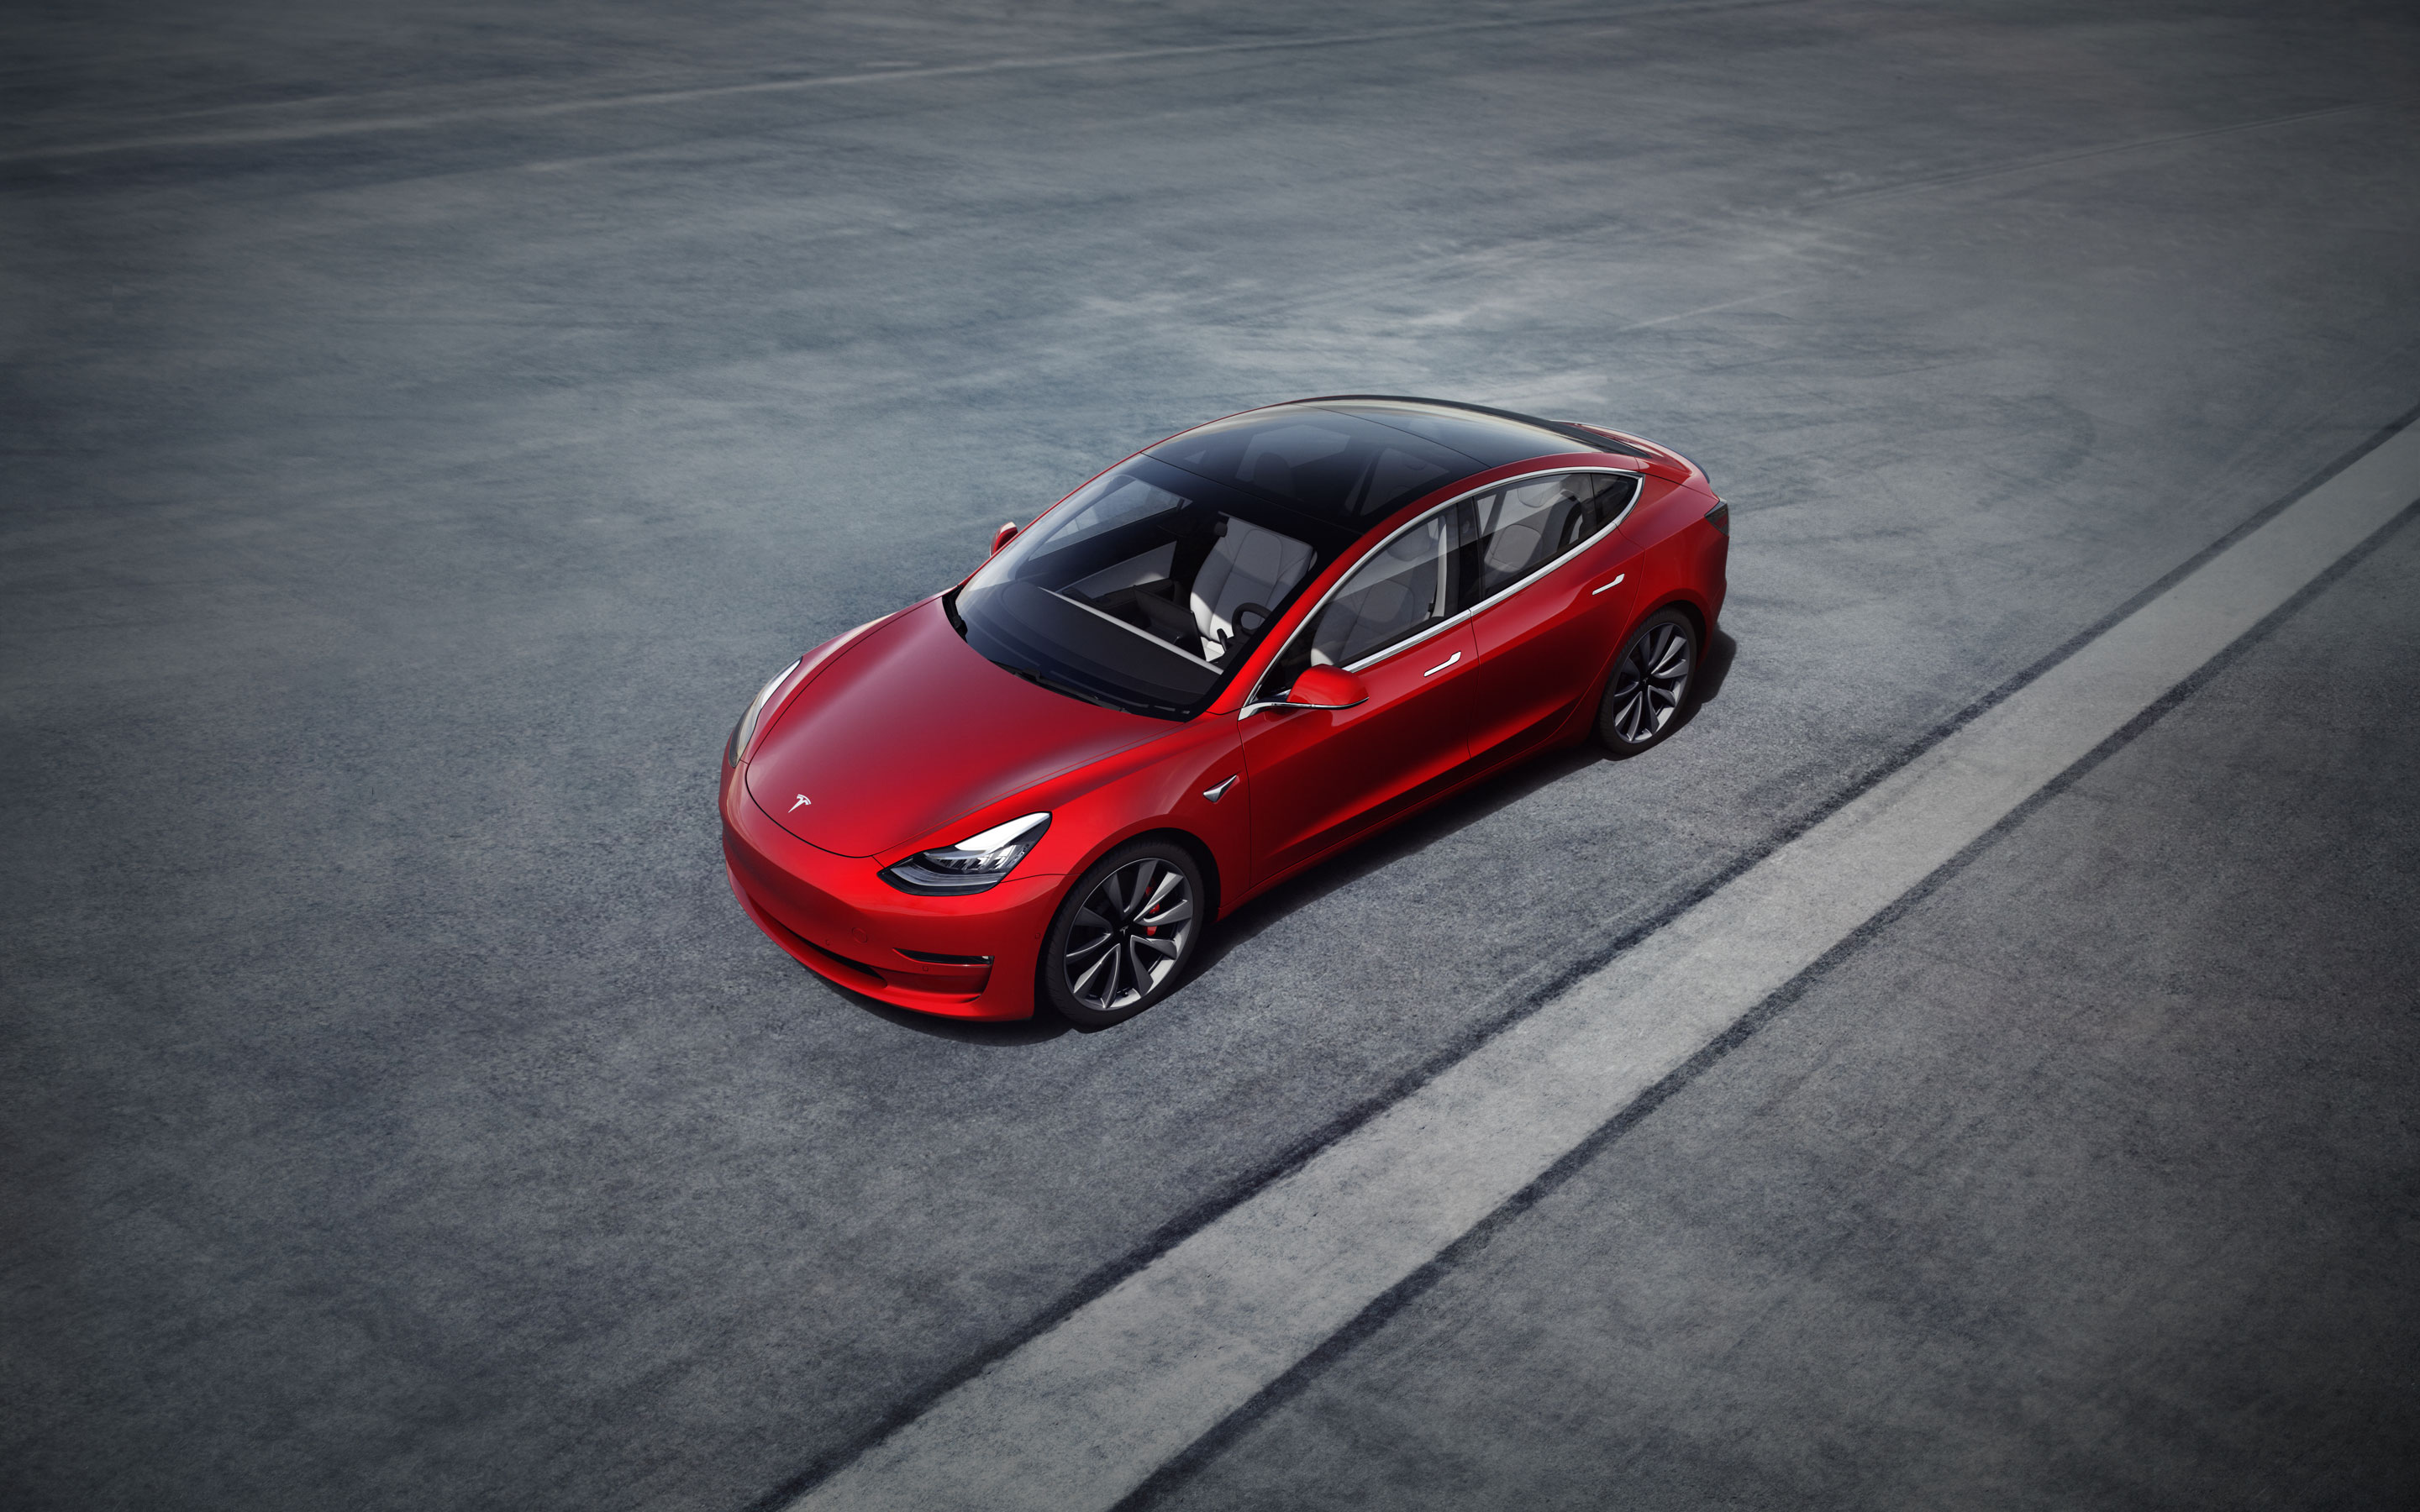 Mẫu Model 3 của Tesla hiện cũng mới chỉ đạt công suất sạc tối đa 250 kilowatts. Ảnh: Tesla.